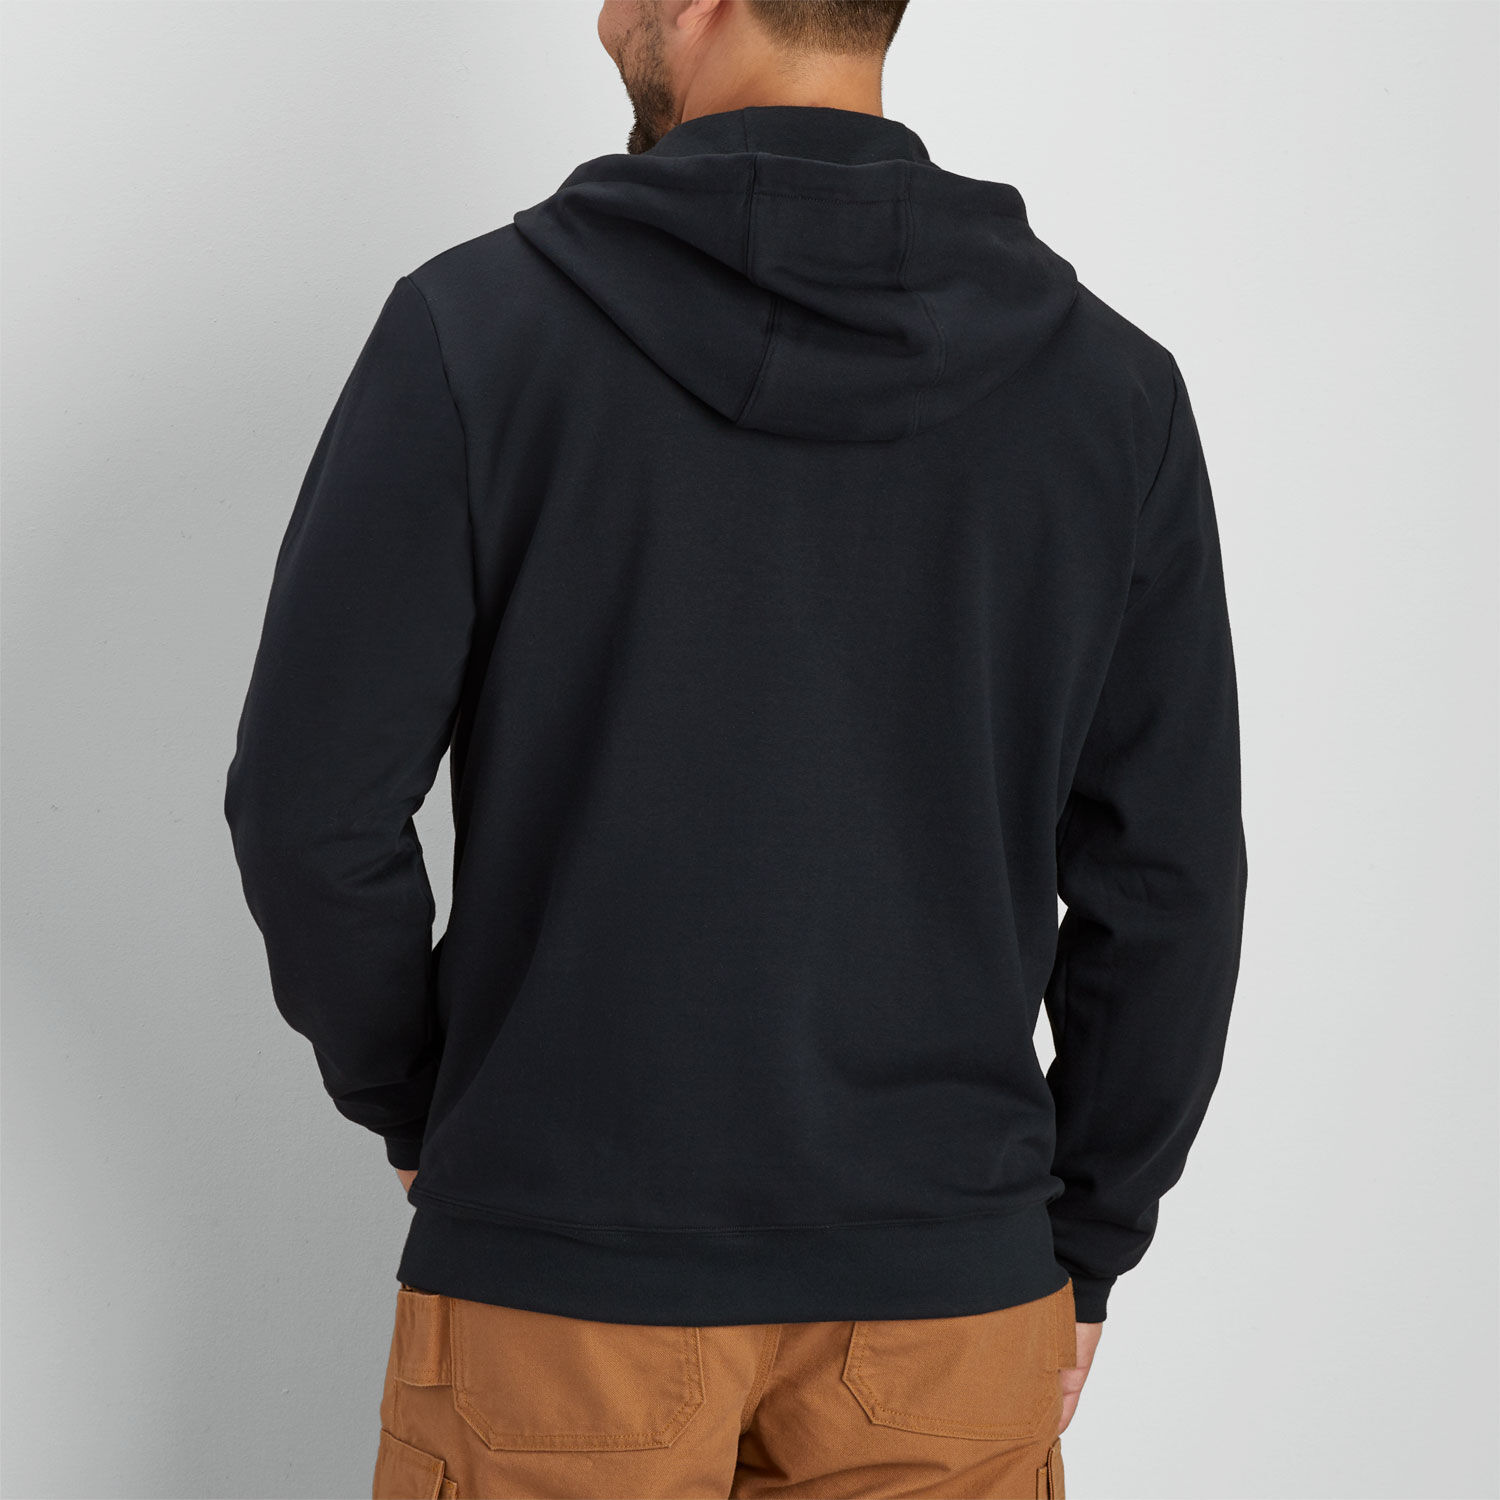 Fasox Black Men's Sweatshirt – Buffalo Jeans - US